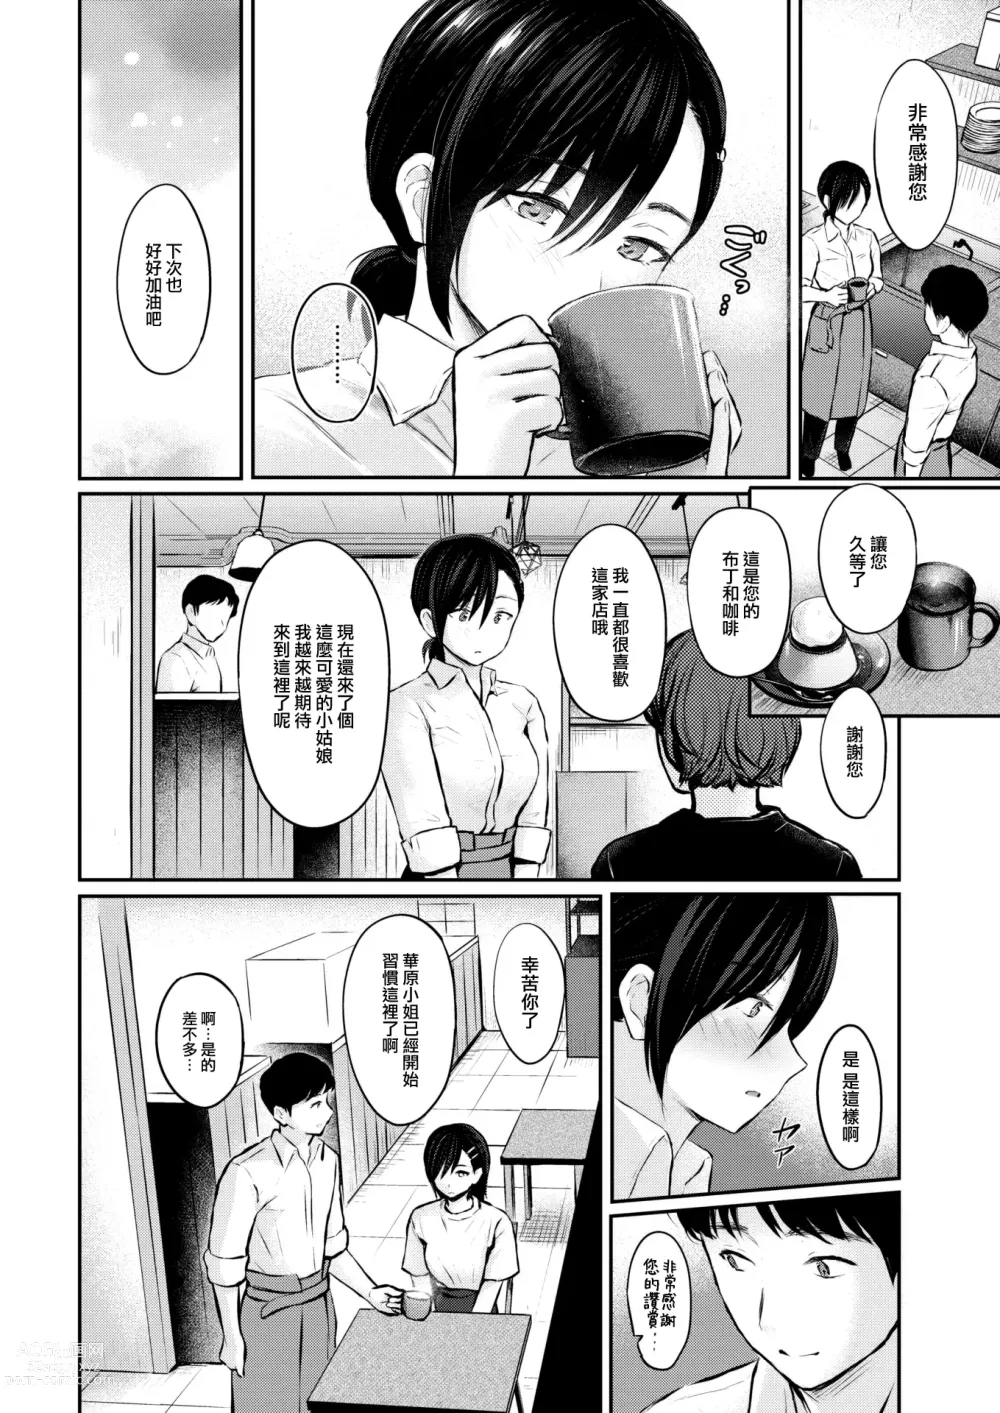 Page 7 of manga Sukimono Kajitsu